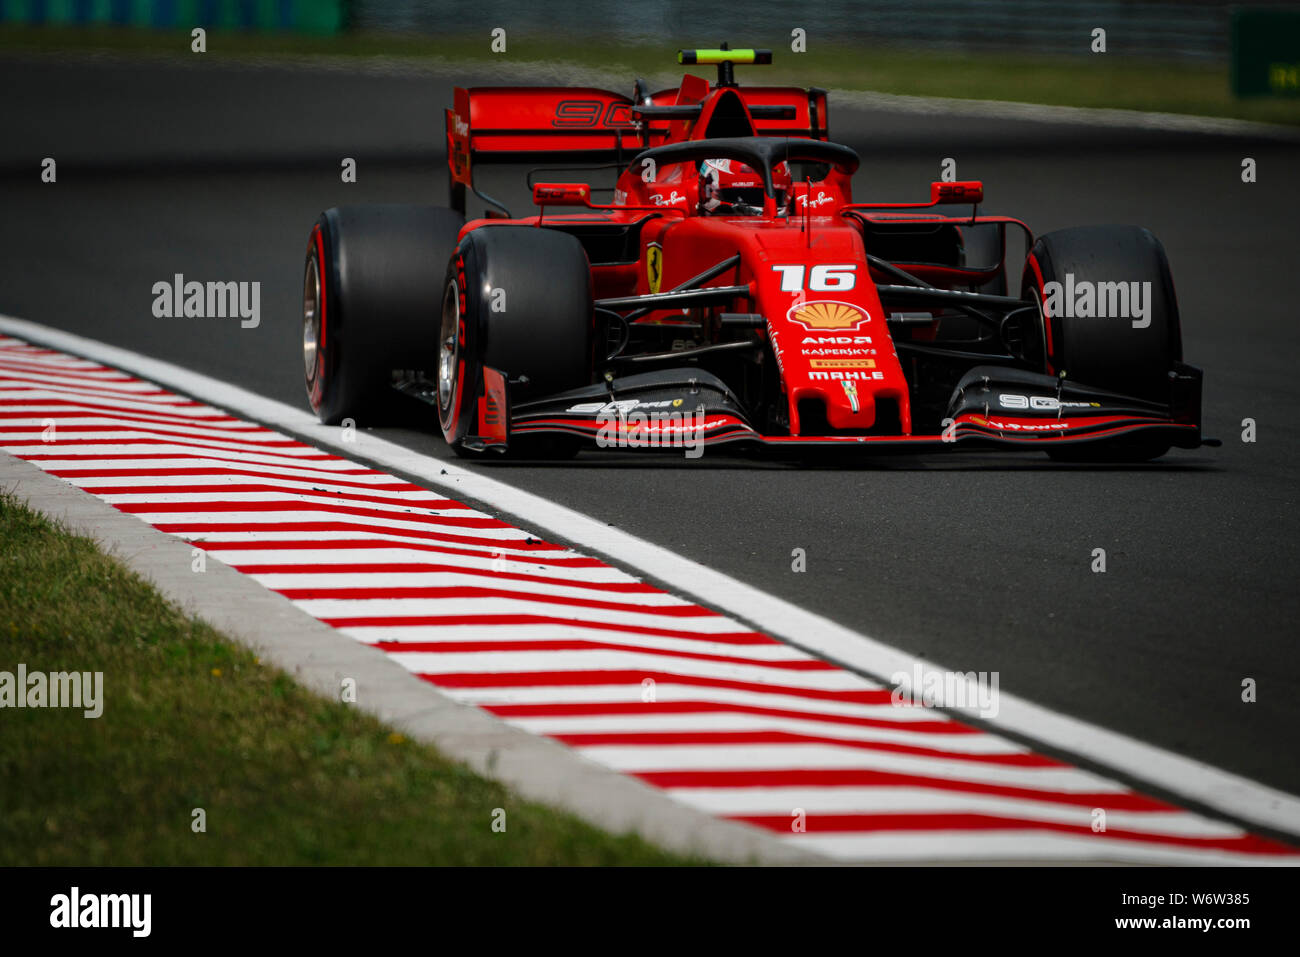 La Scuderia Ferrari pilote Monégasque Charles Leclerc fait concurrence au cours de la première session de la pratique de l'Hungarian Grand Prix de F1. Banque D'Images